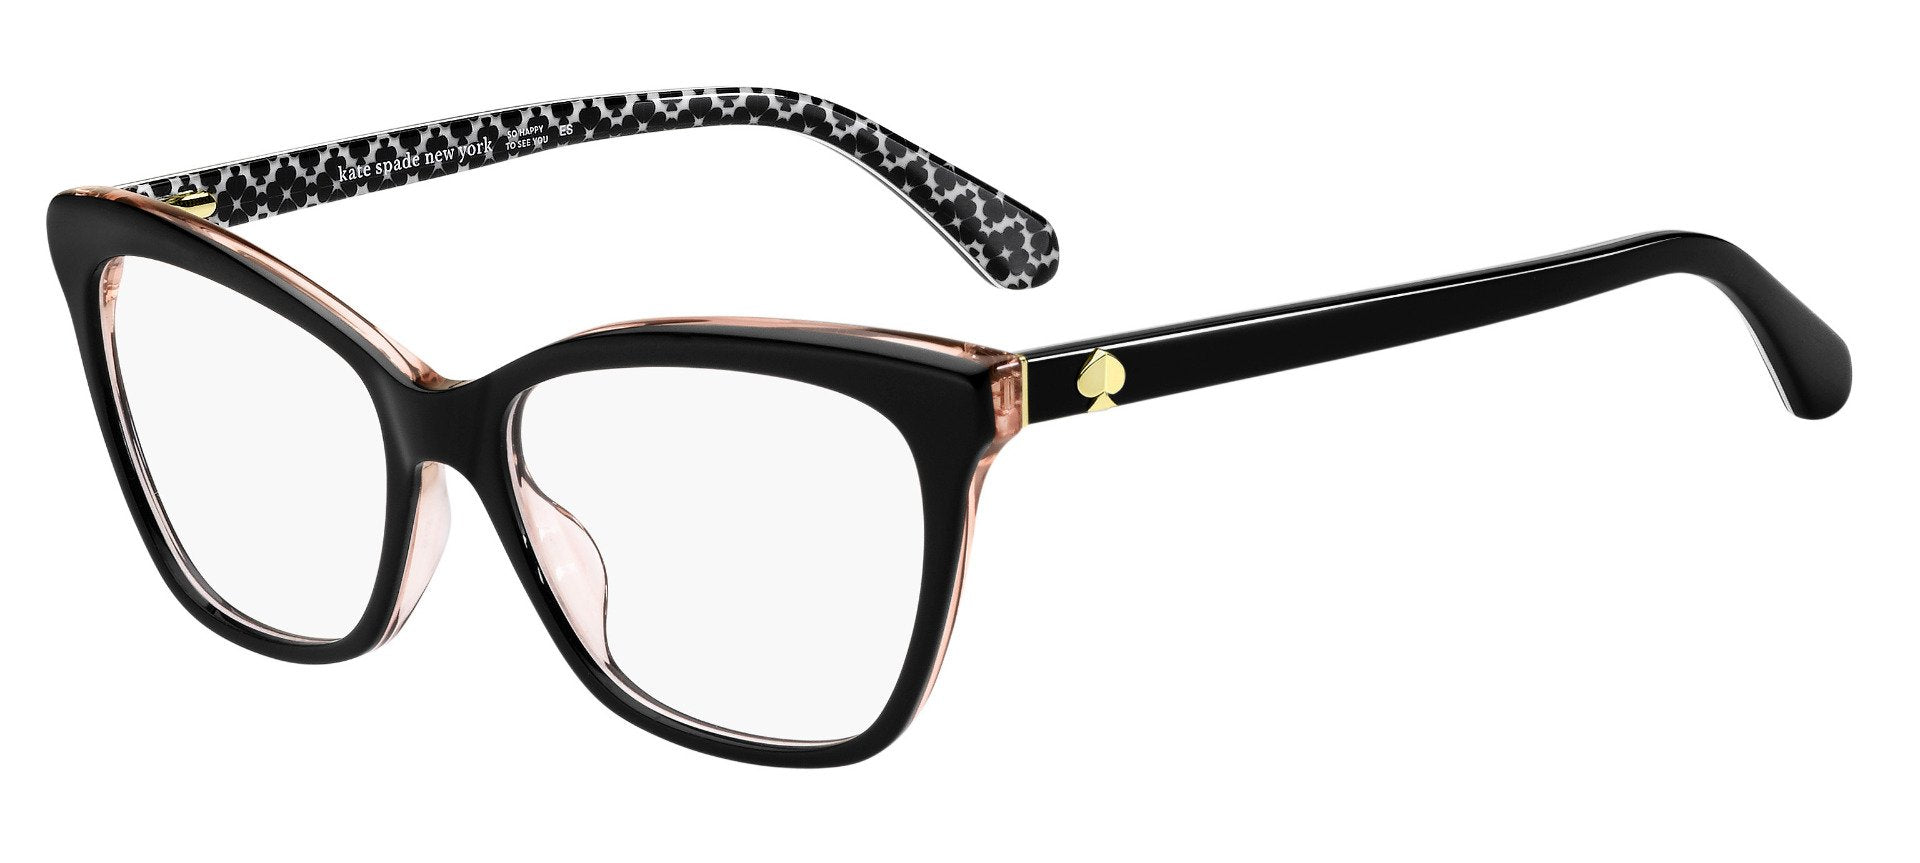 Kate Spade Adria Cat Eye Glasses | Fashion Eyewear US